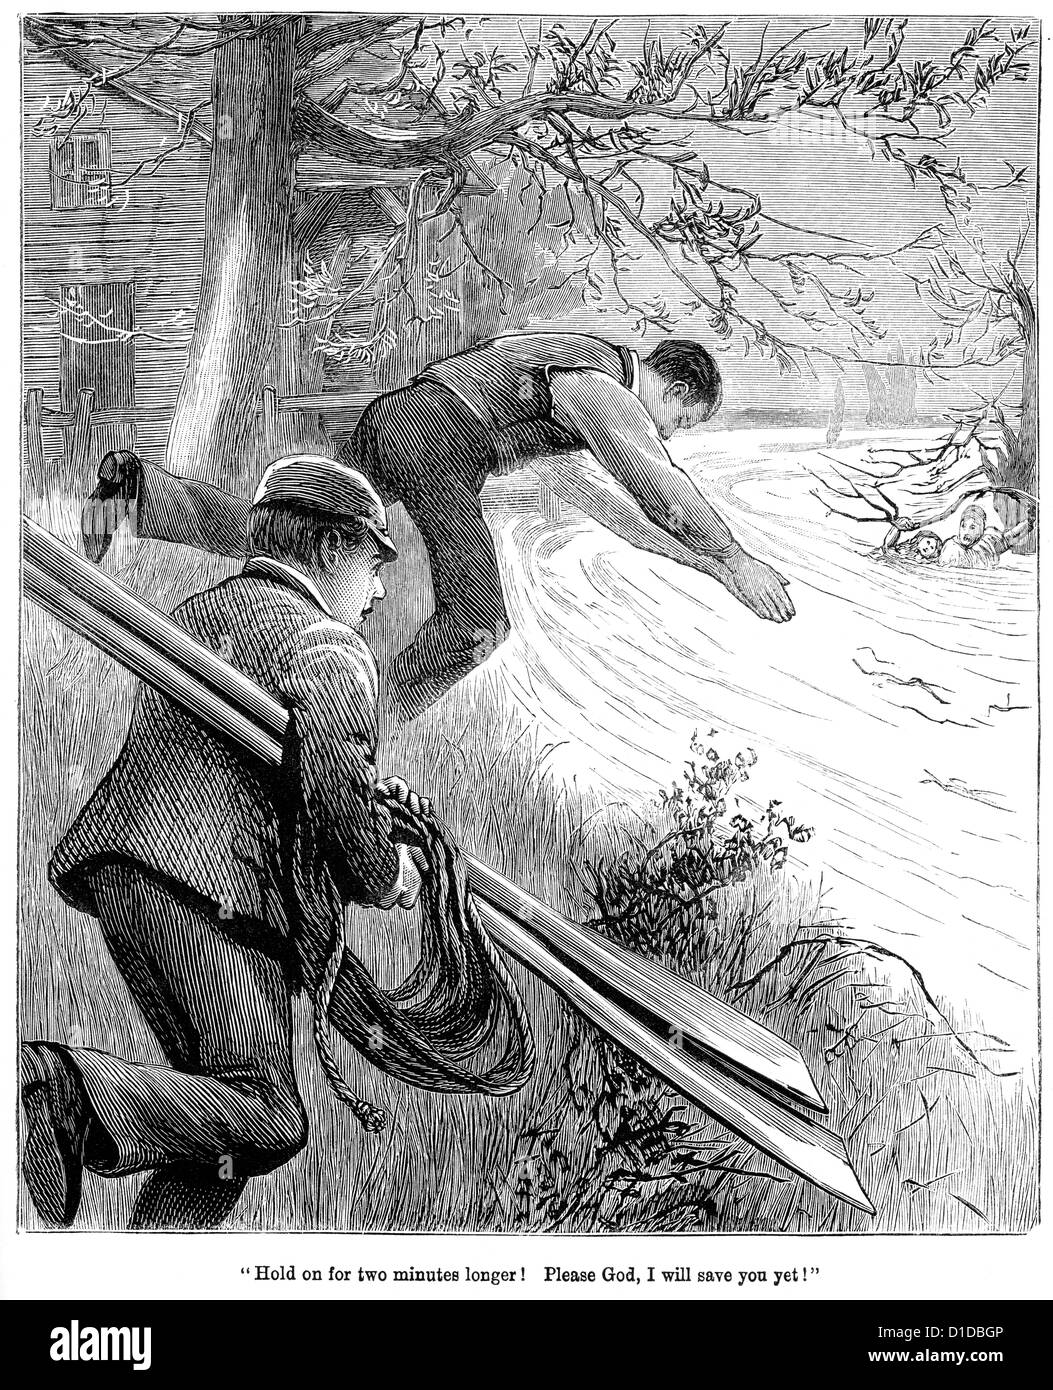 Incisione in stile vittoriano di due uomini correndo per salvare la gente annega in un fiume, 1897 Foto Stock